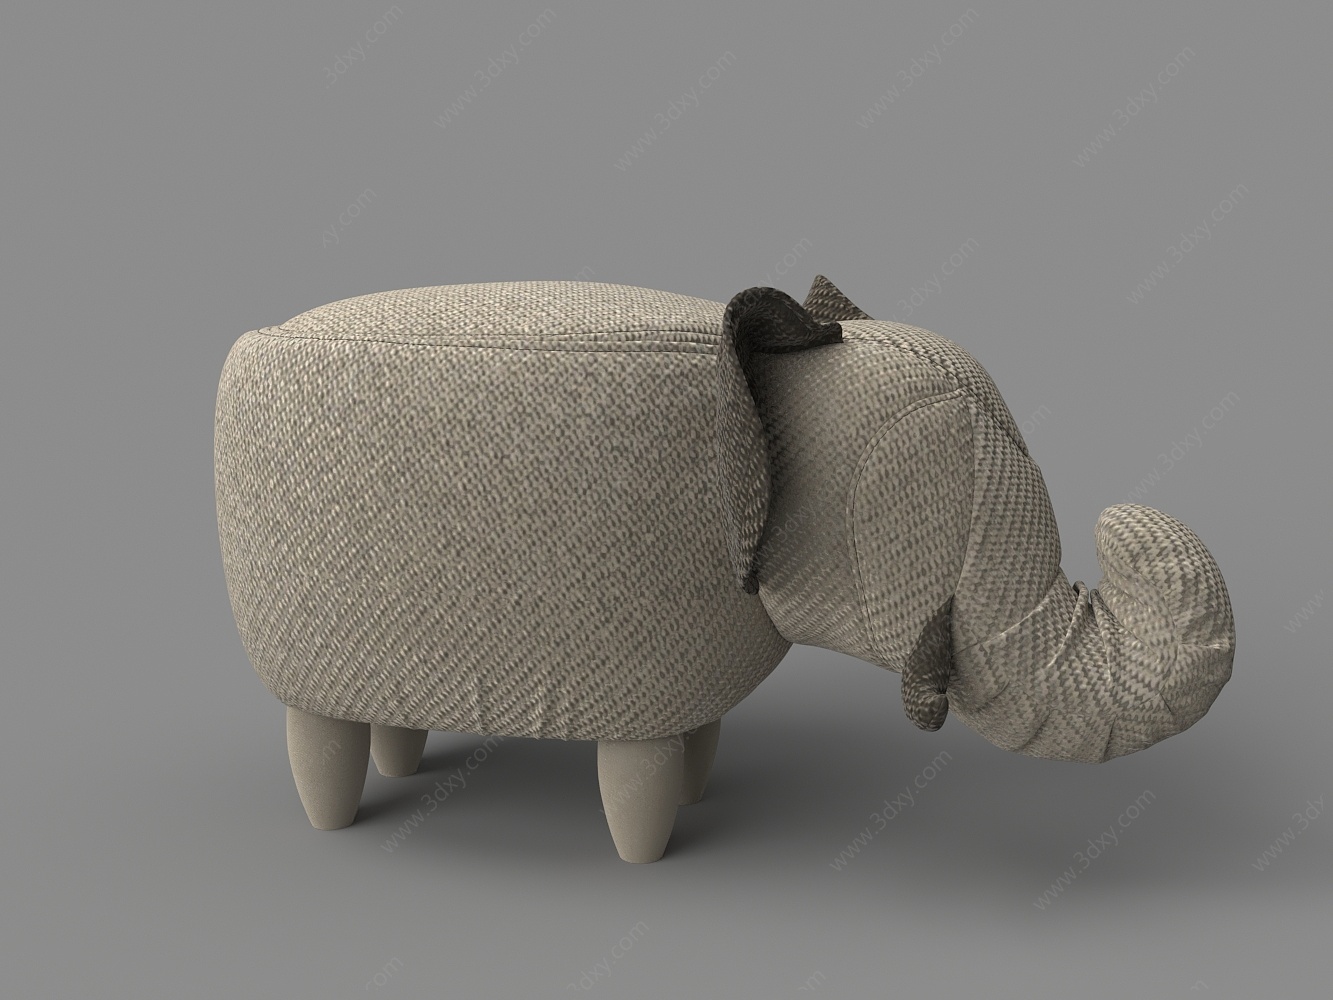 布艺大象造型脚踏凳3D模型